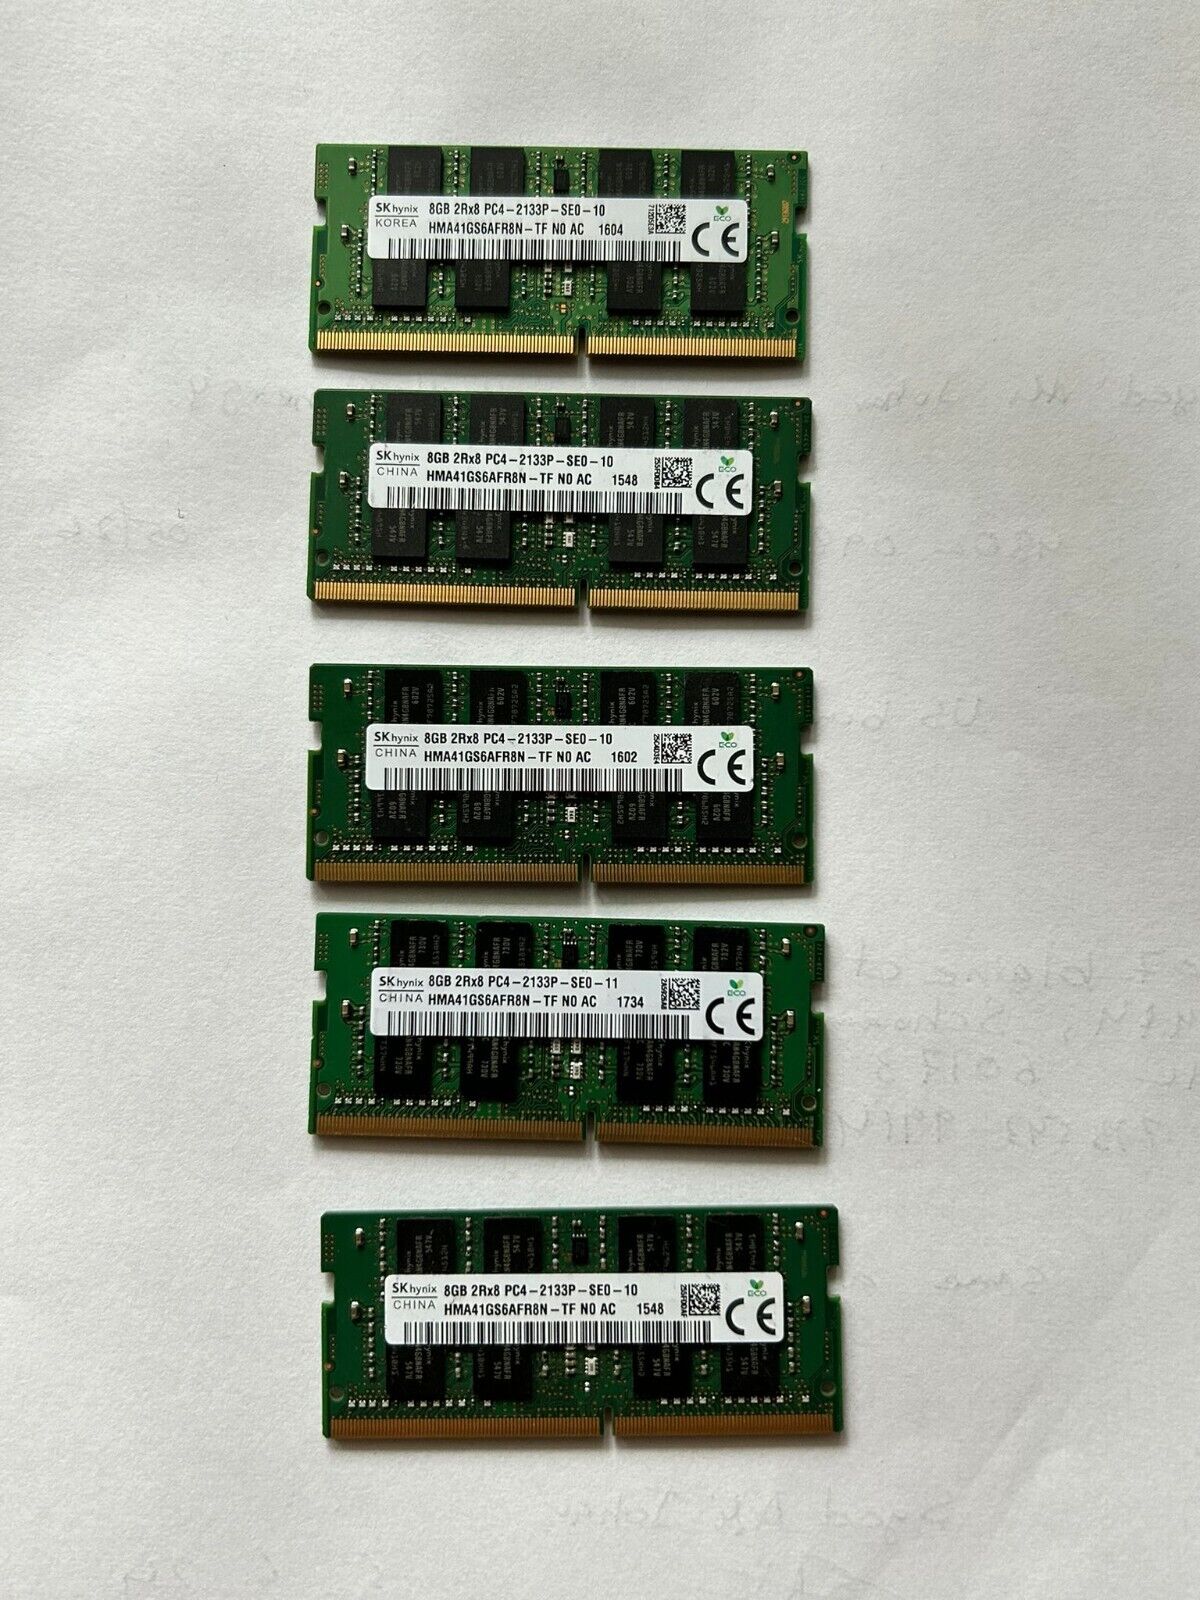 lot 5 8gb ddr4 laptop ram HSK Hynix 8GB 2Rx8 PC4-2133P-SE0-10 Laptop Ram Memory